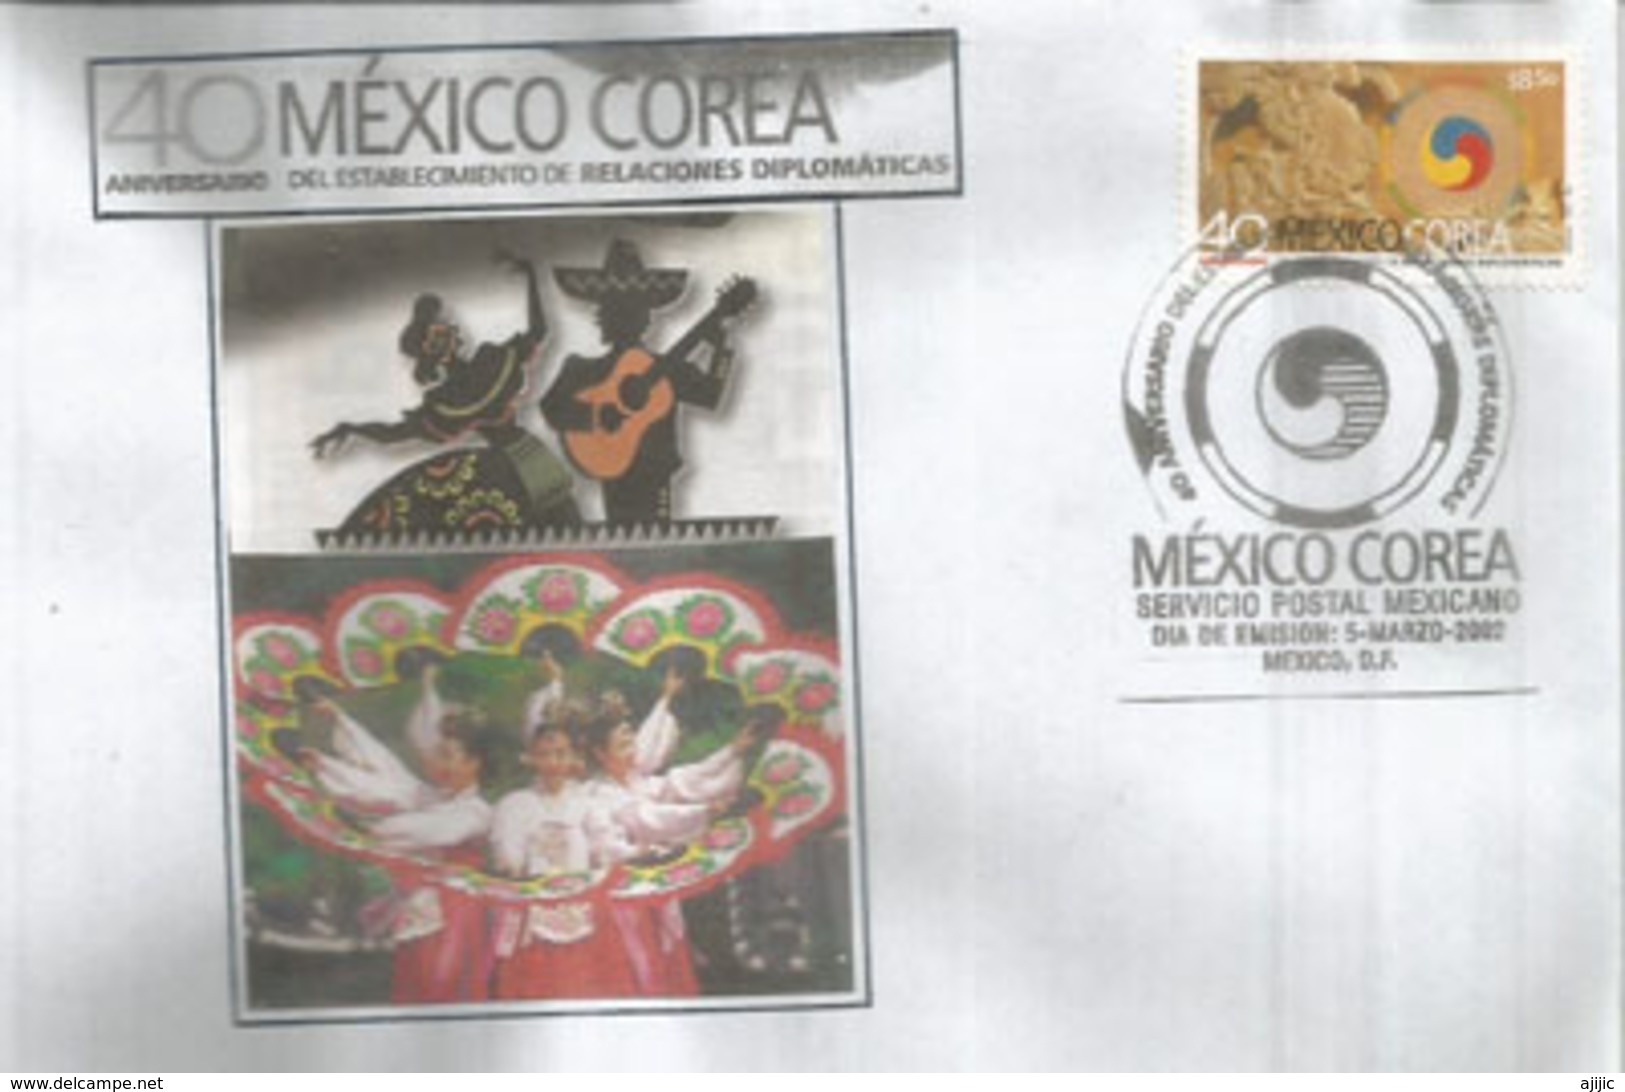 Mexico-Corea 40 Años Relaciones Diplomaticas, FDC Mexico - Corea Del Sur